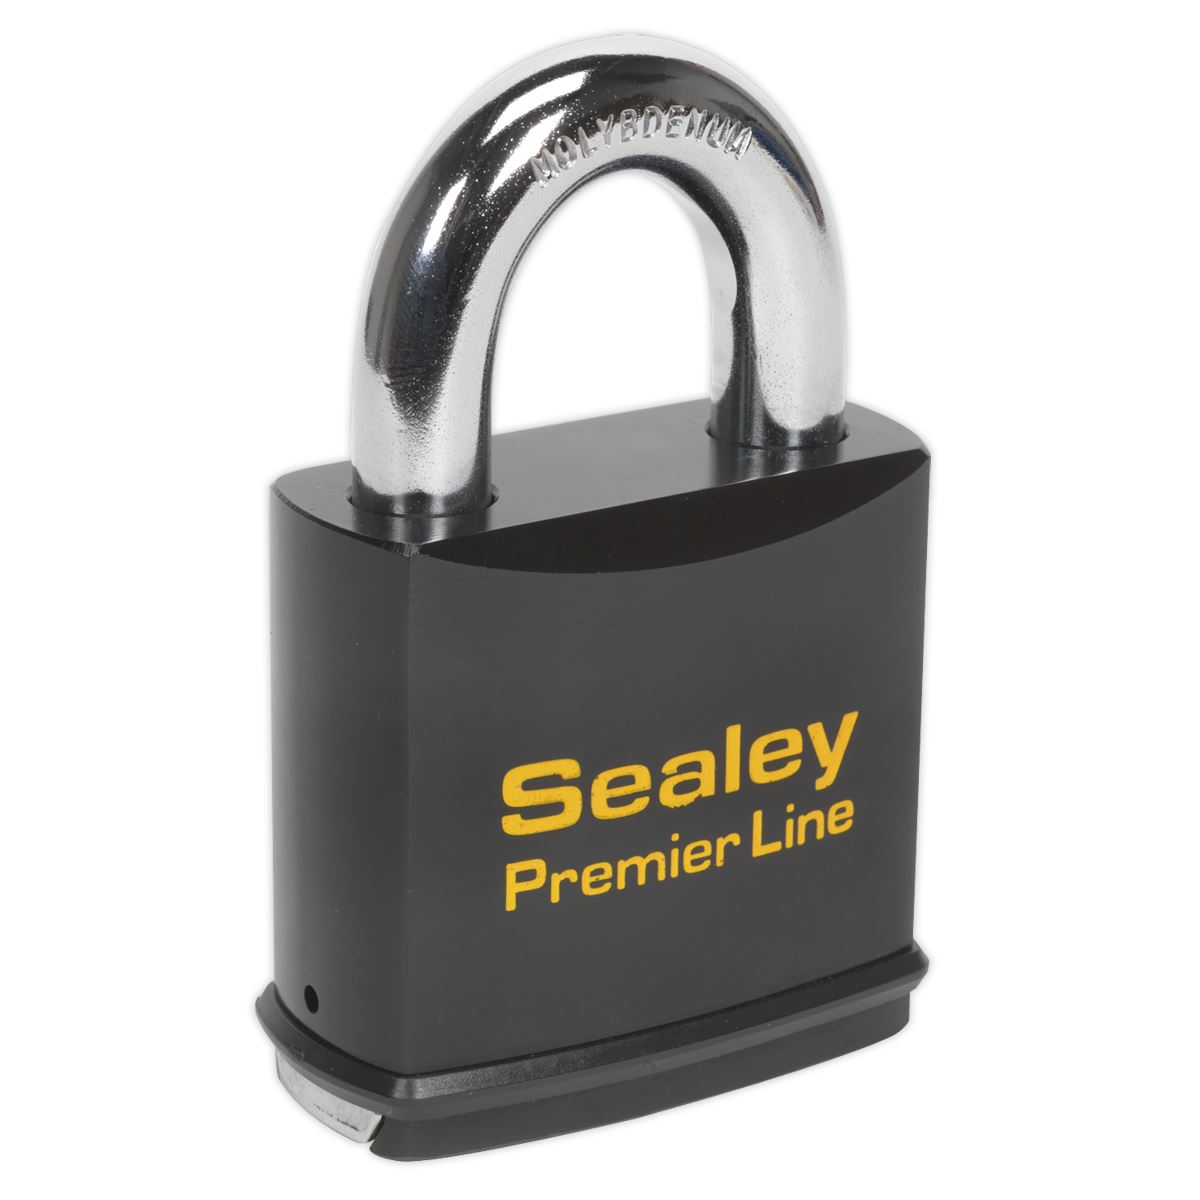 Sealey Premier Steel Body Padlock 70mm